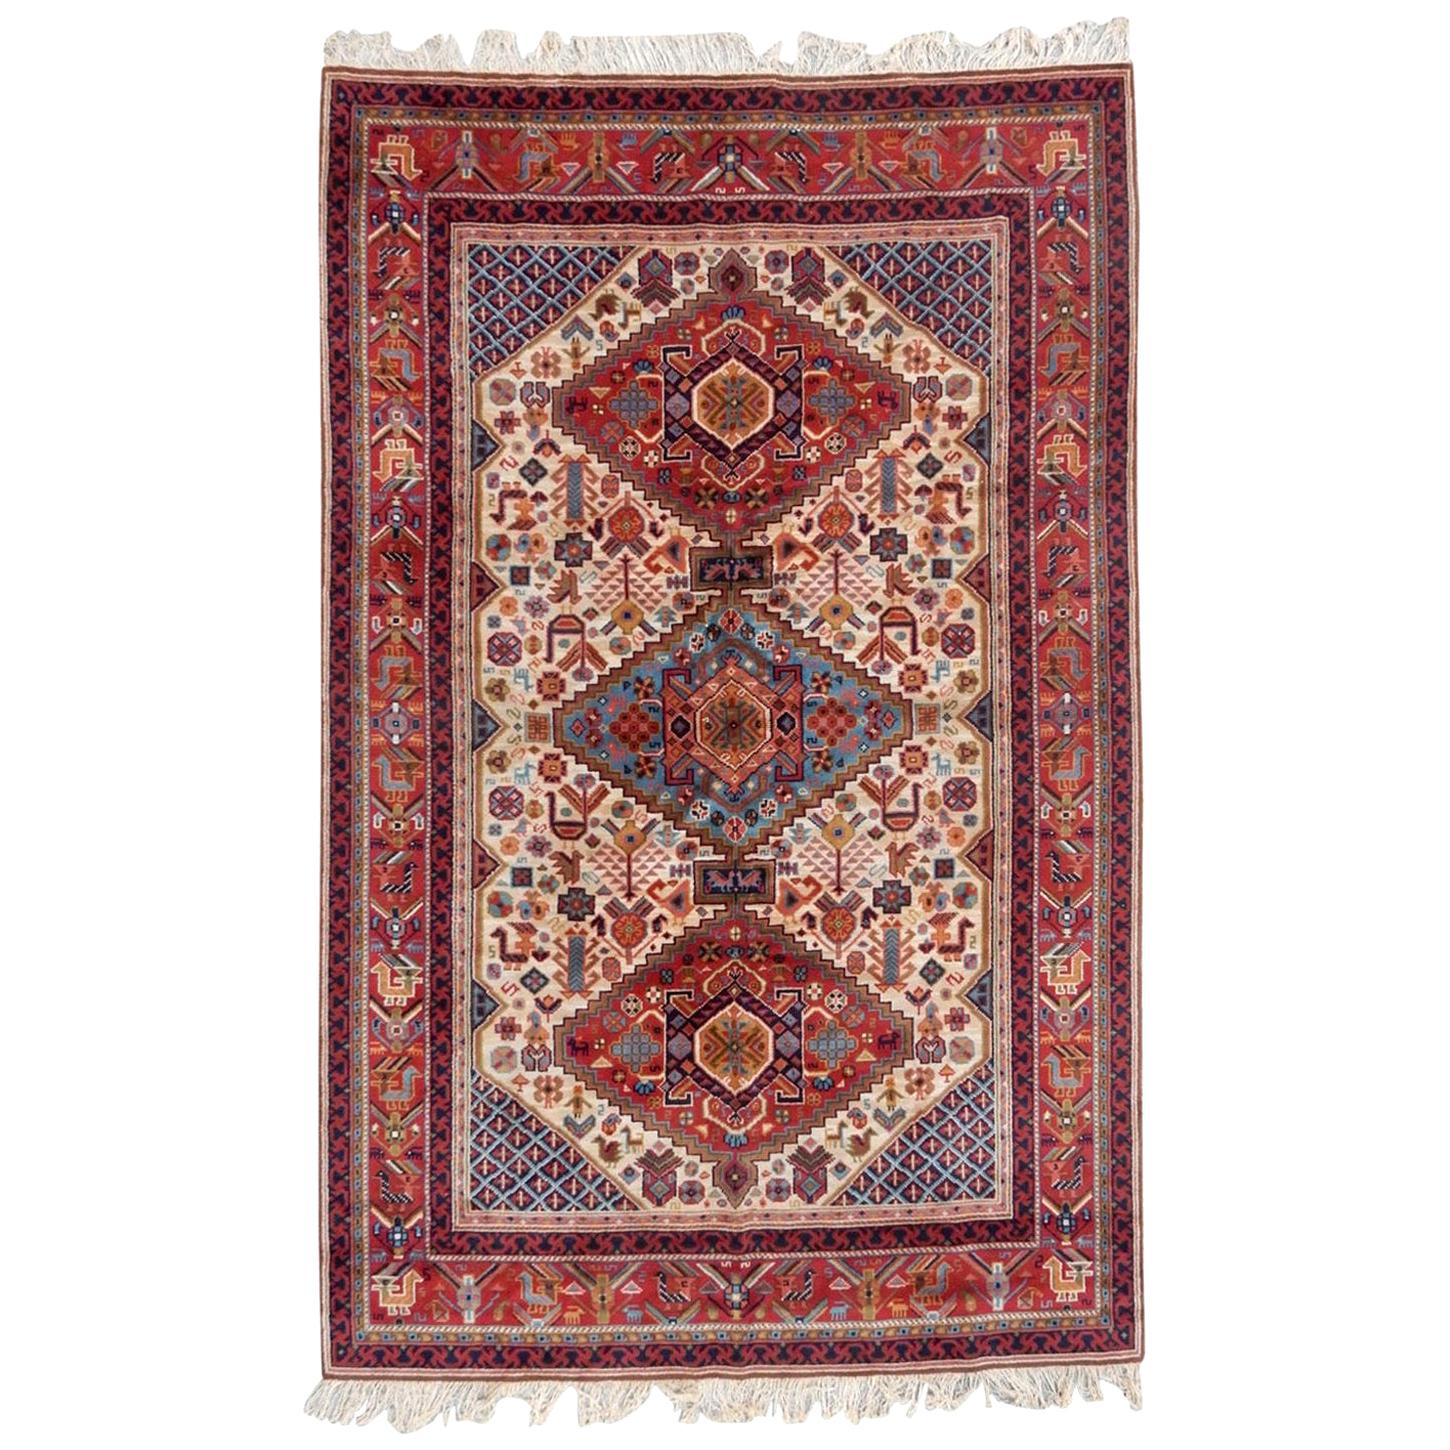 Bobyrugs schöner Vintage-Teppich im französischen Shiraz-Stil